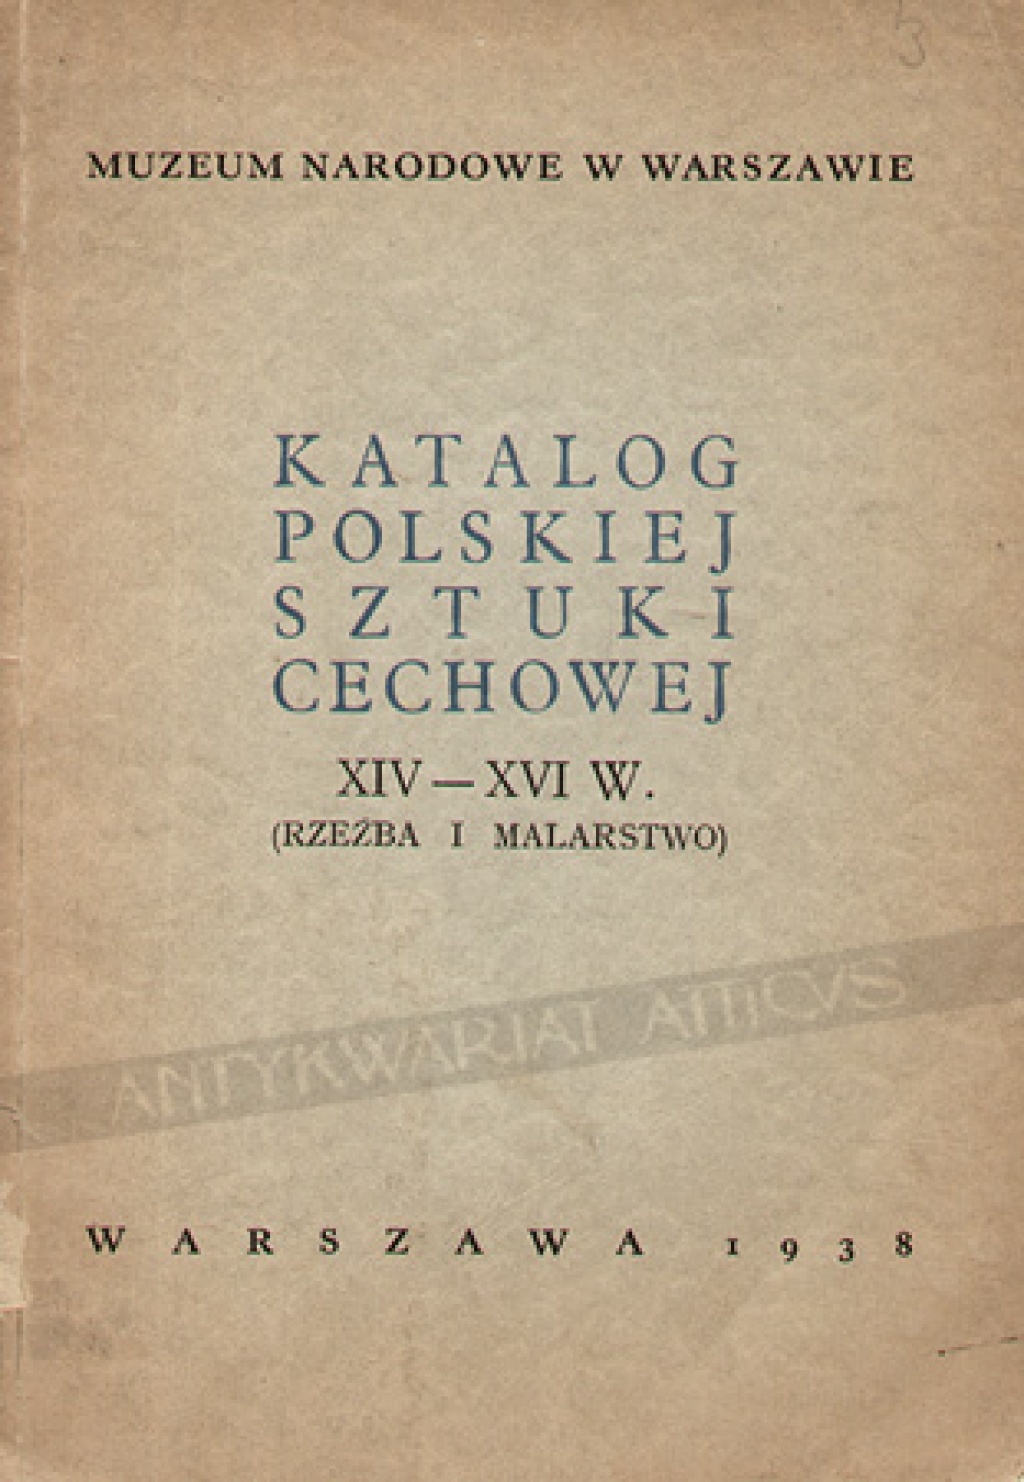 Katalog polskiej sztuki cechowej XIV - XVI w. (Rzeźba i malarstwo)